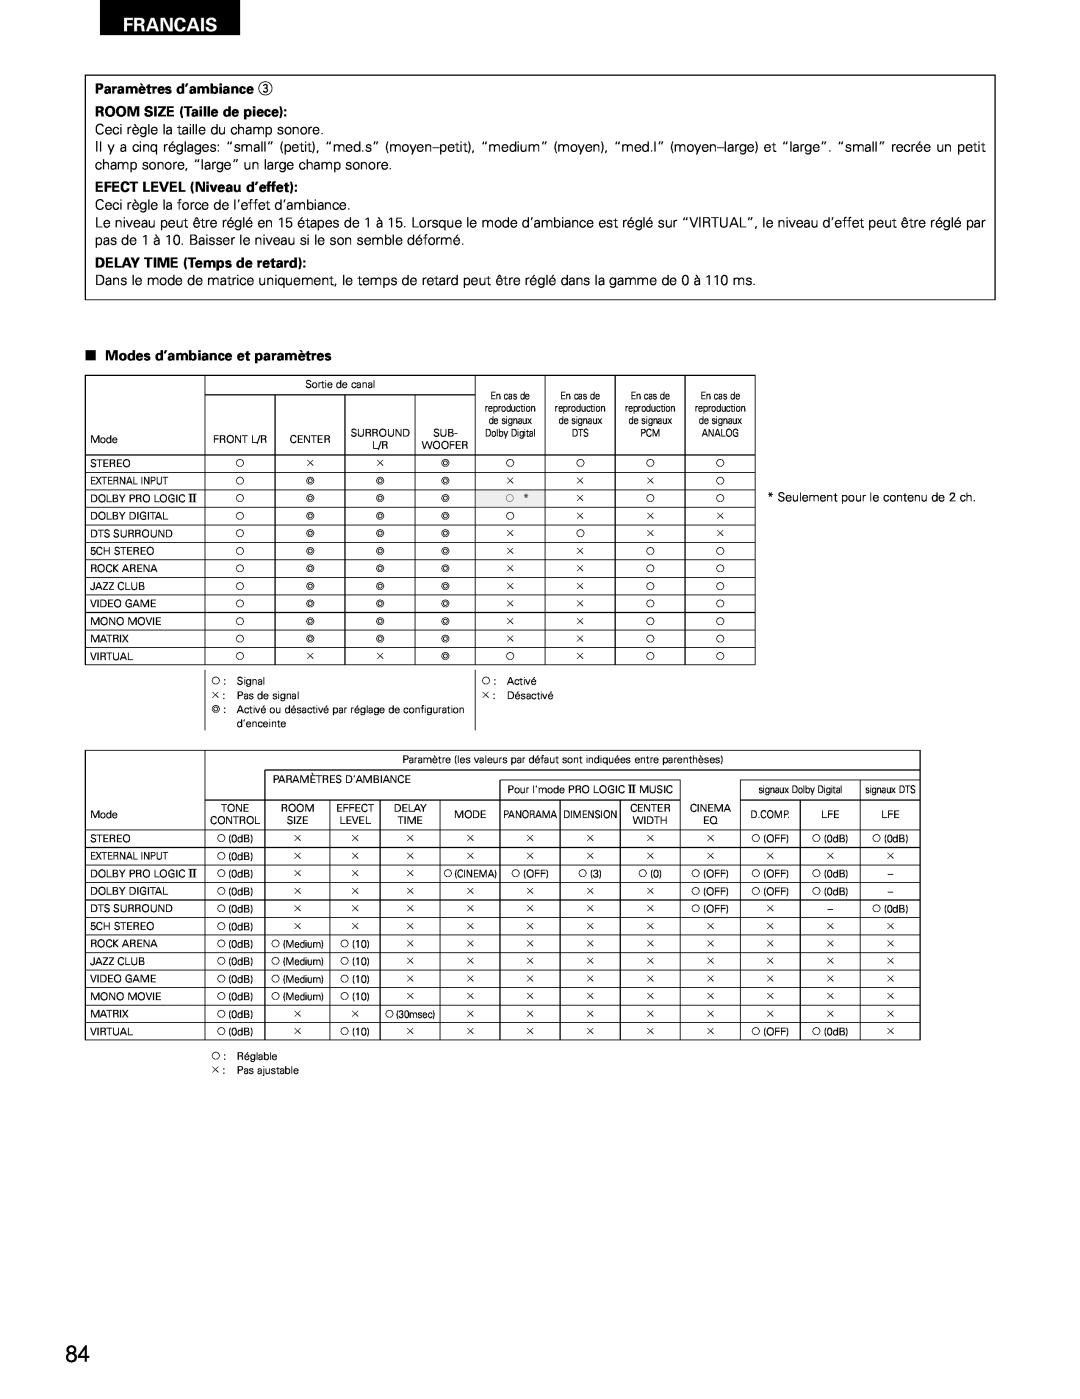 Denon AVR-1802/882 manual Francais, Paramètres d’ambiance e ROOM SIZE Taille de piece, EFECT LEVEL Niveau d’effet 